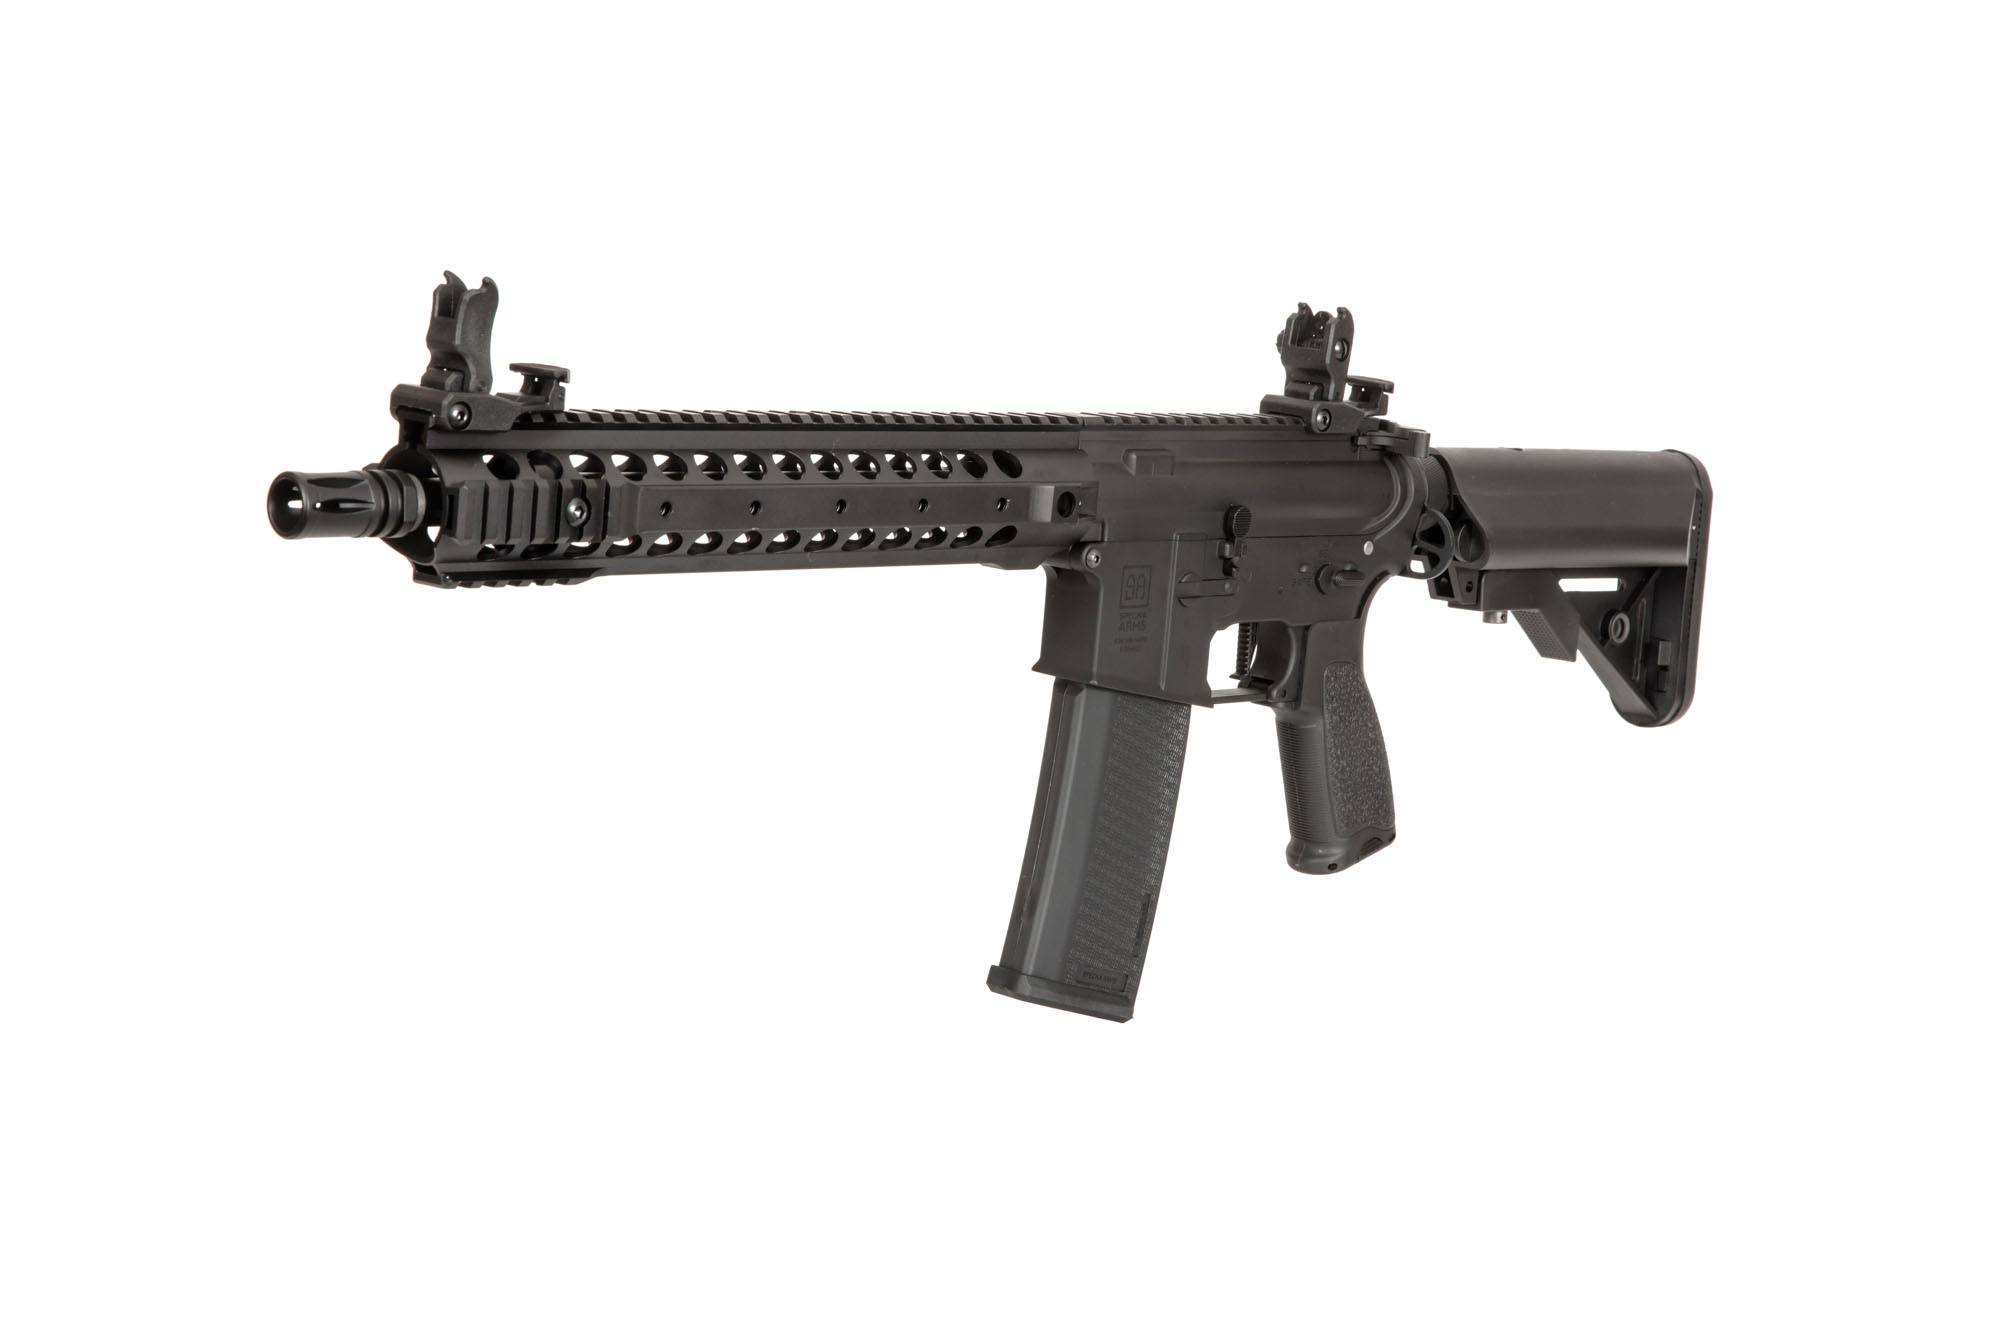 SA-E06 EDGE ™ 2.0 Carbine Replica - Black by Specna Arms on Airsoft Mania Europe